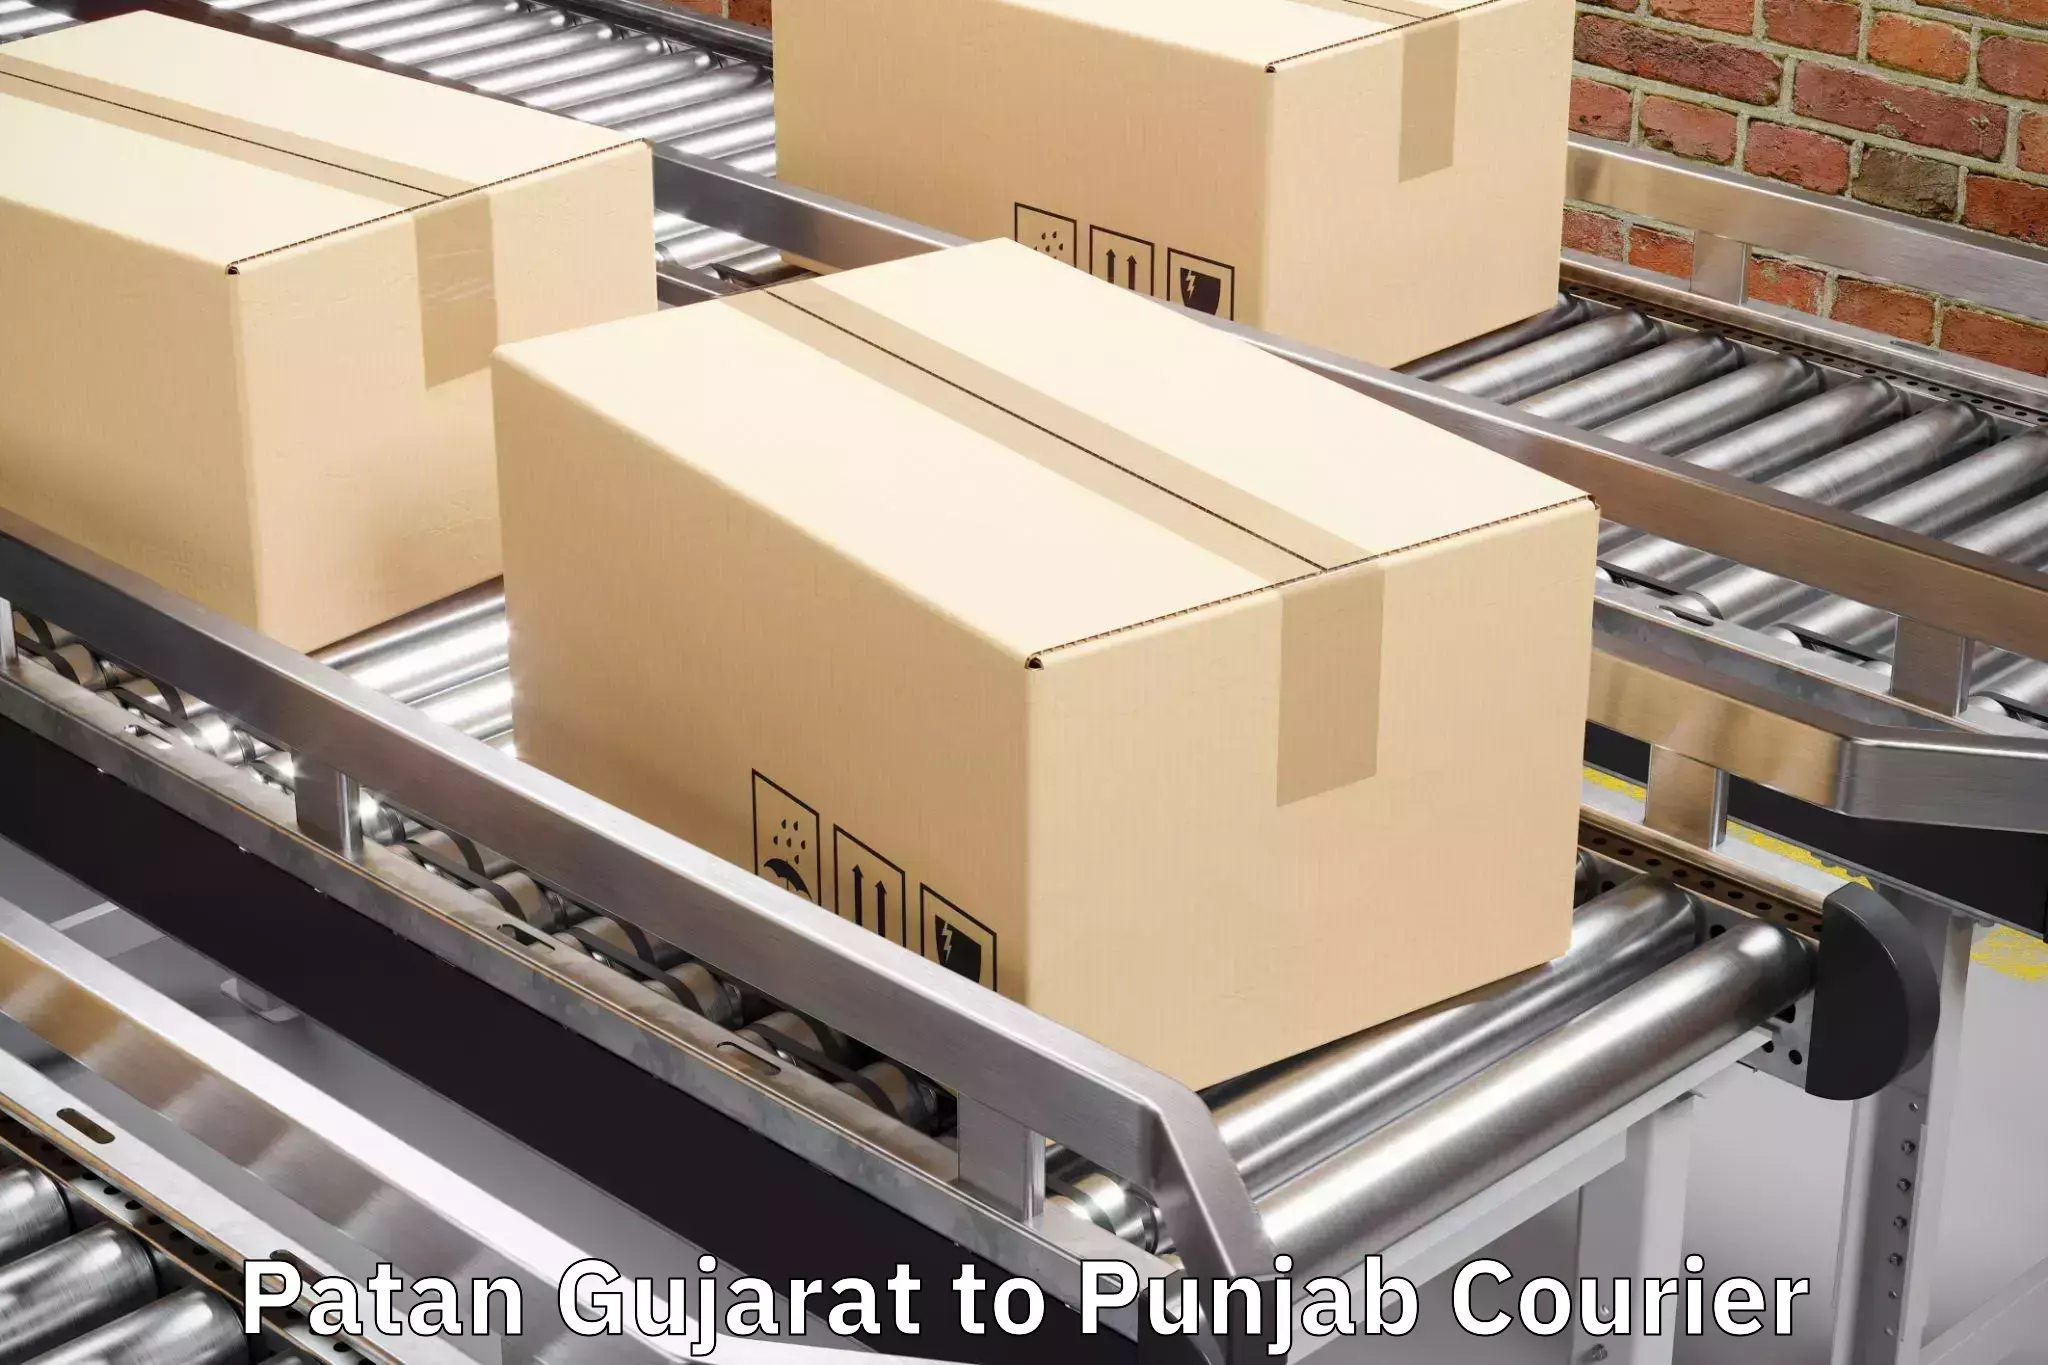 Baggage transport management Patan Gujarat to Raikot